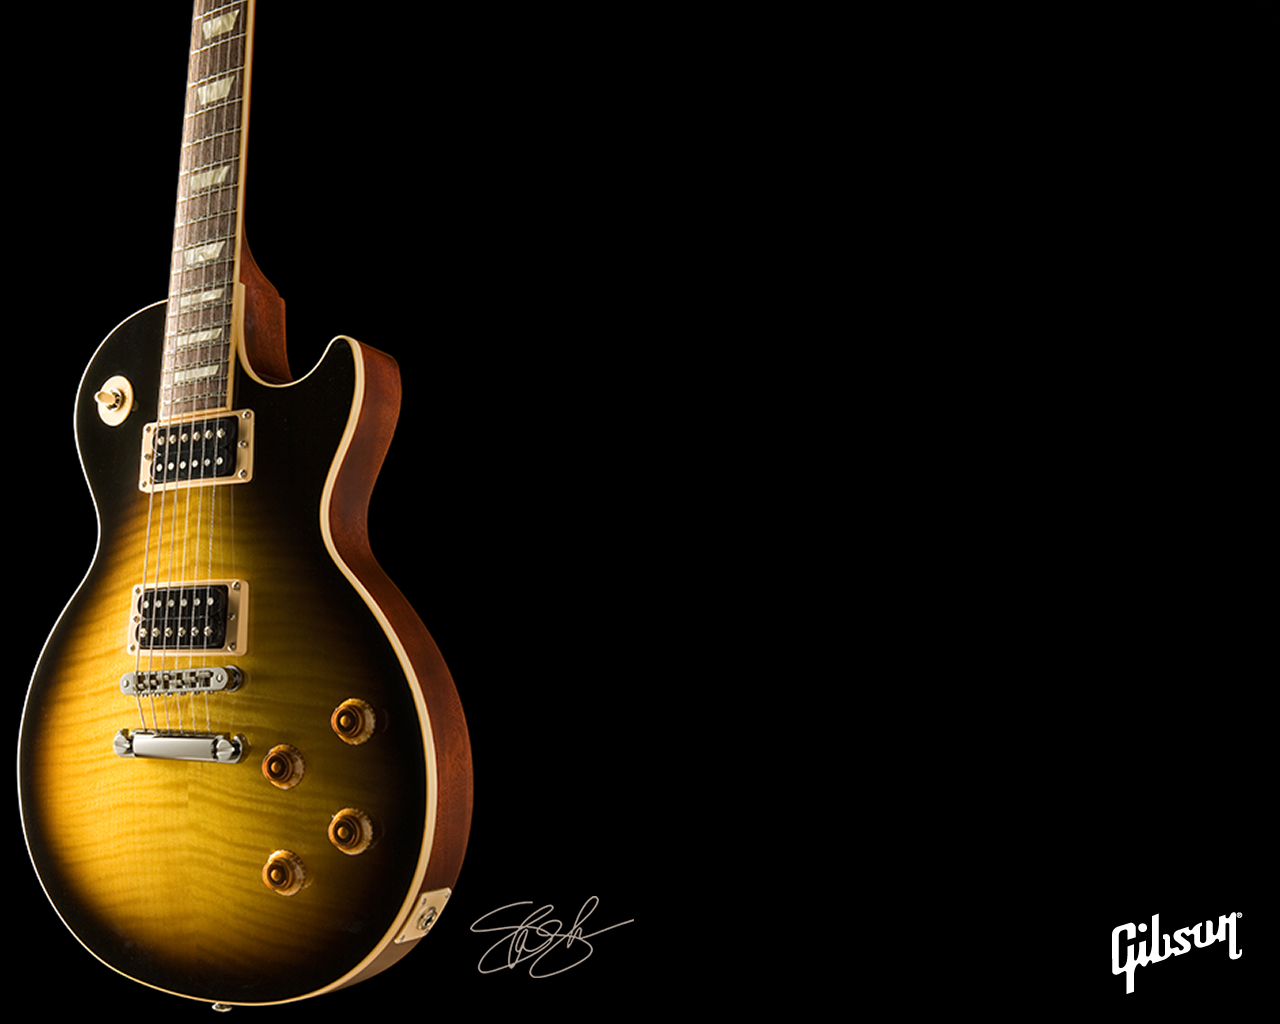 Gibson wallpaper | 1280x1024 | #5620